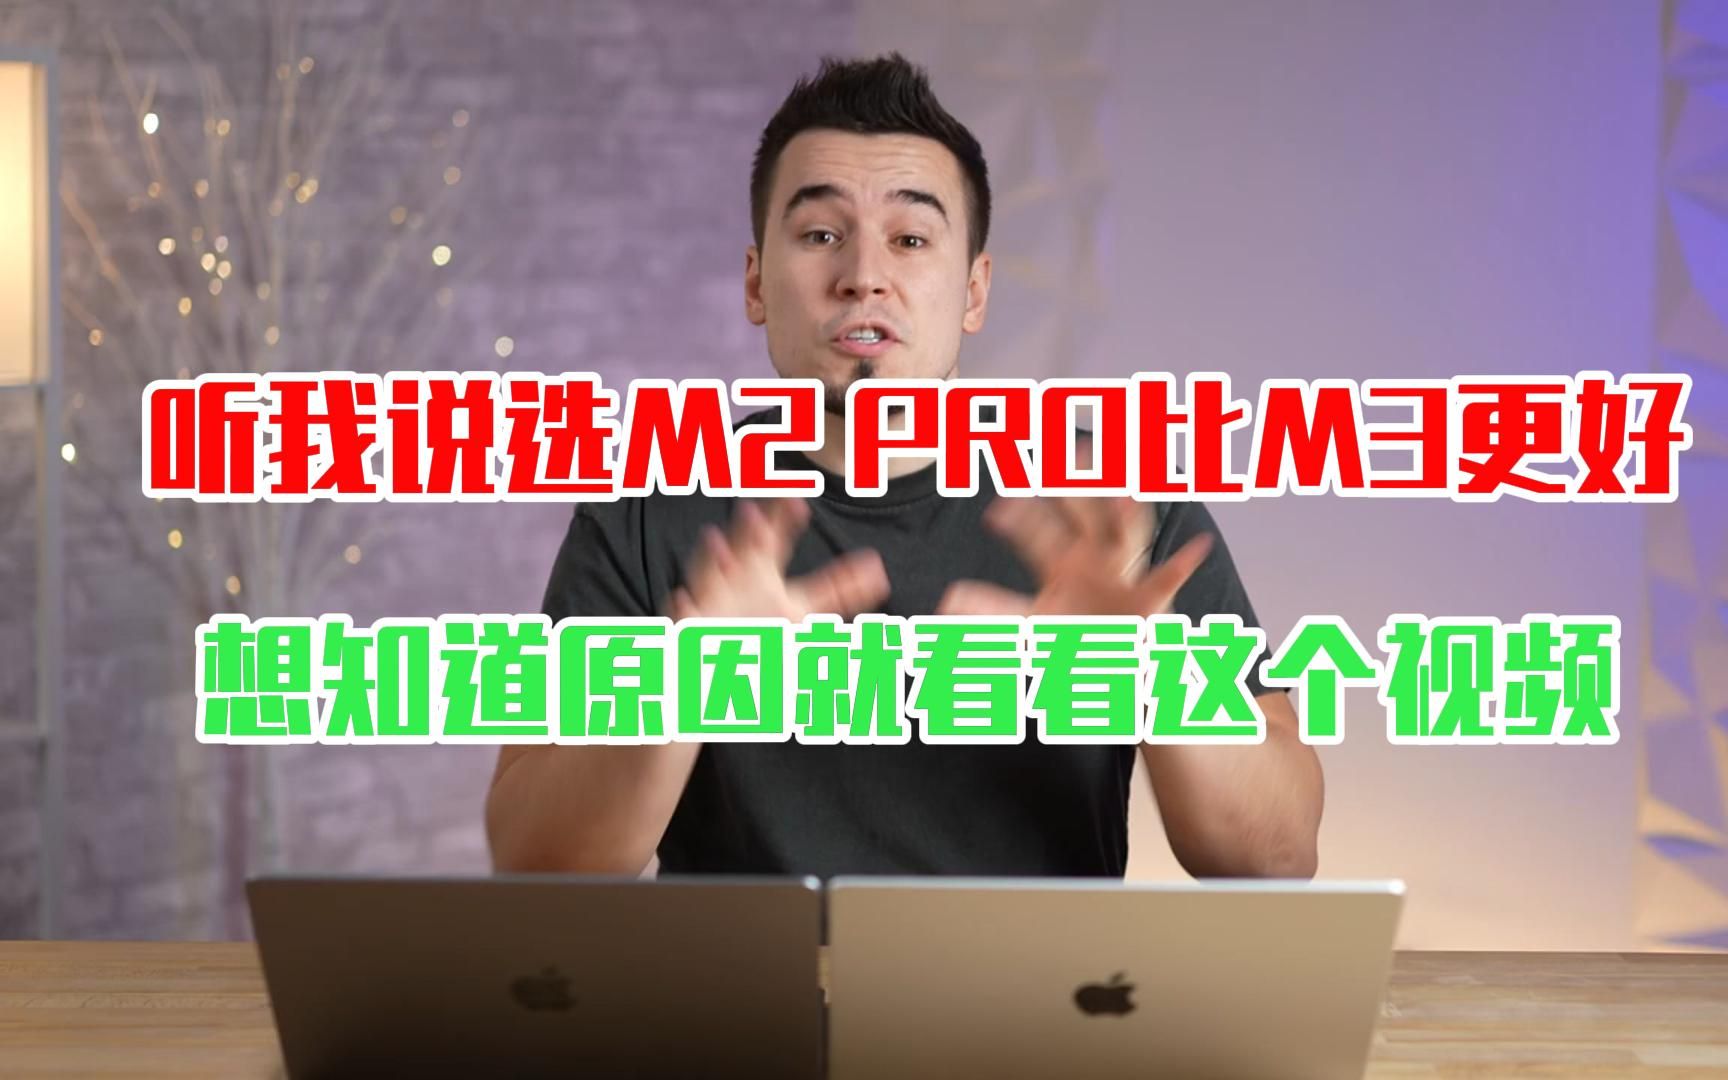 【中文字幕】听哥一句劝！m2 pro 远比 m3 的 macbook pro 要好！看来视频你就知道原因了！